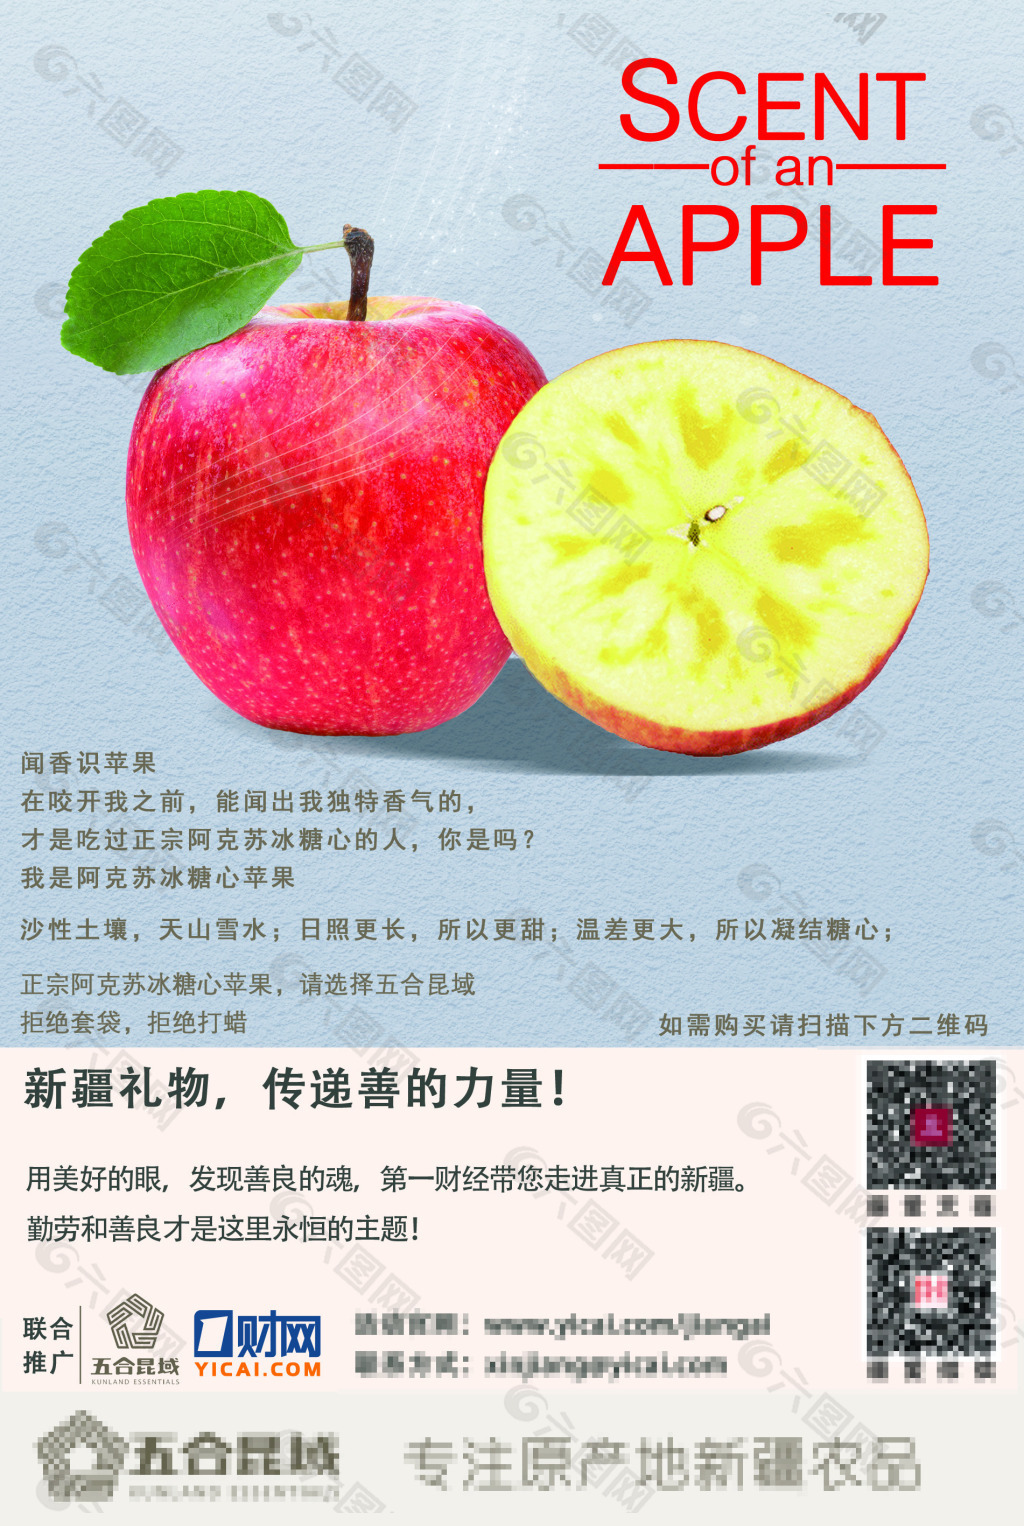 阿克苏苹果宣传图片